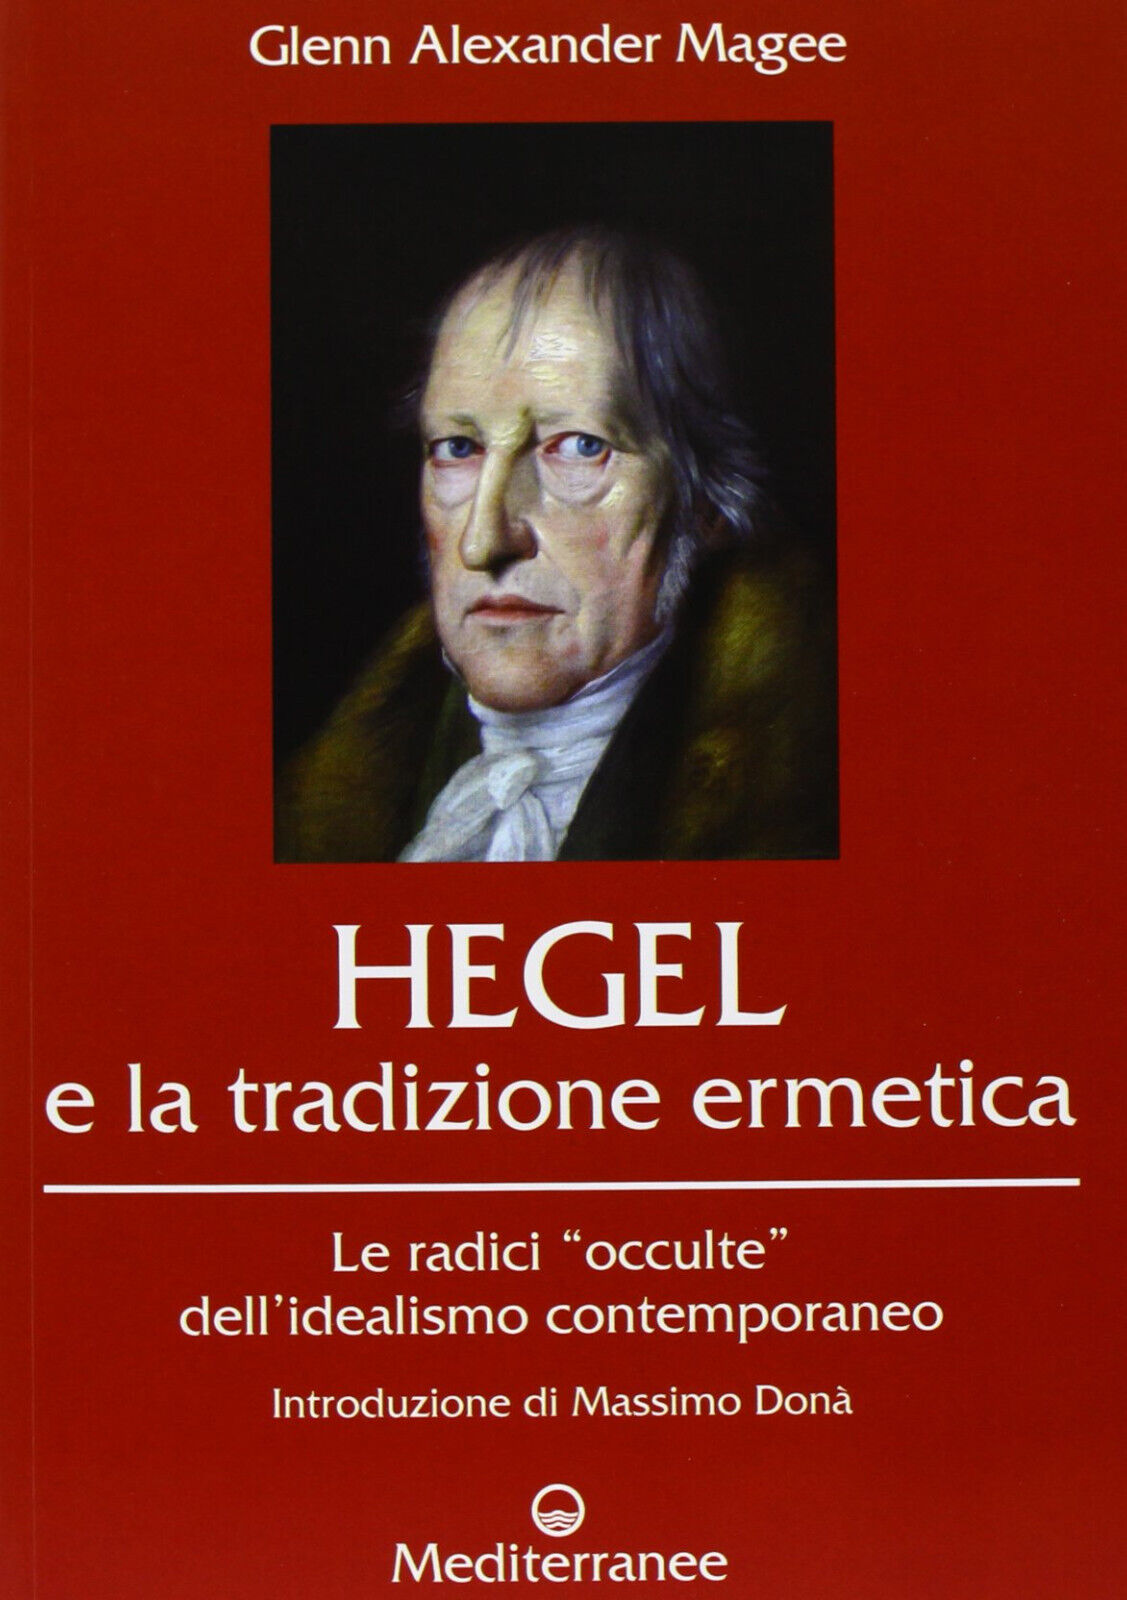 Hegel e la tradizione ermetica - Glenn Alexander Magee - Mediterranee, 2013 libro usato